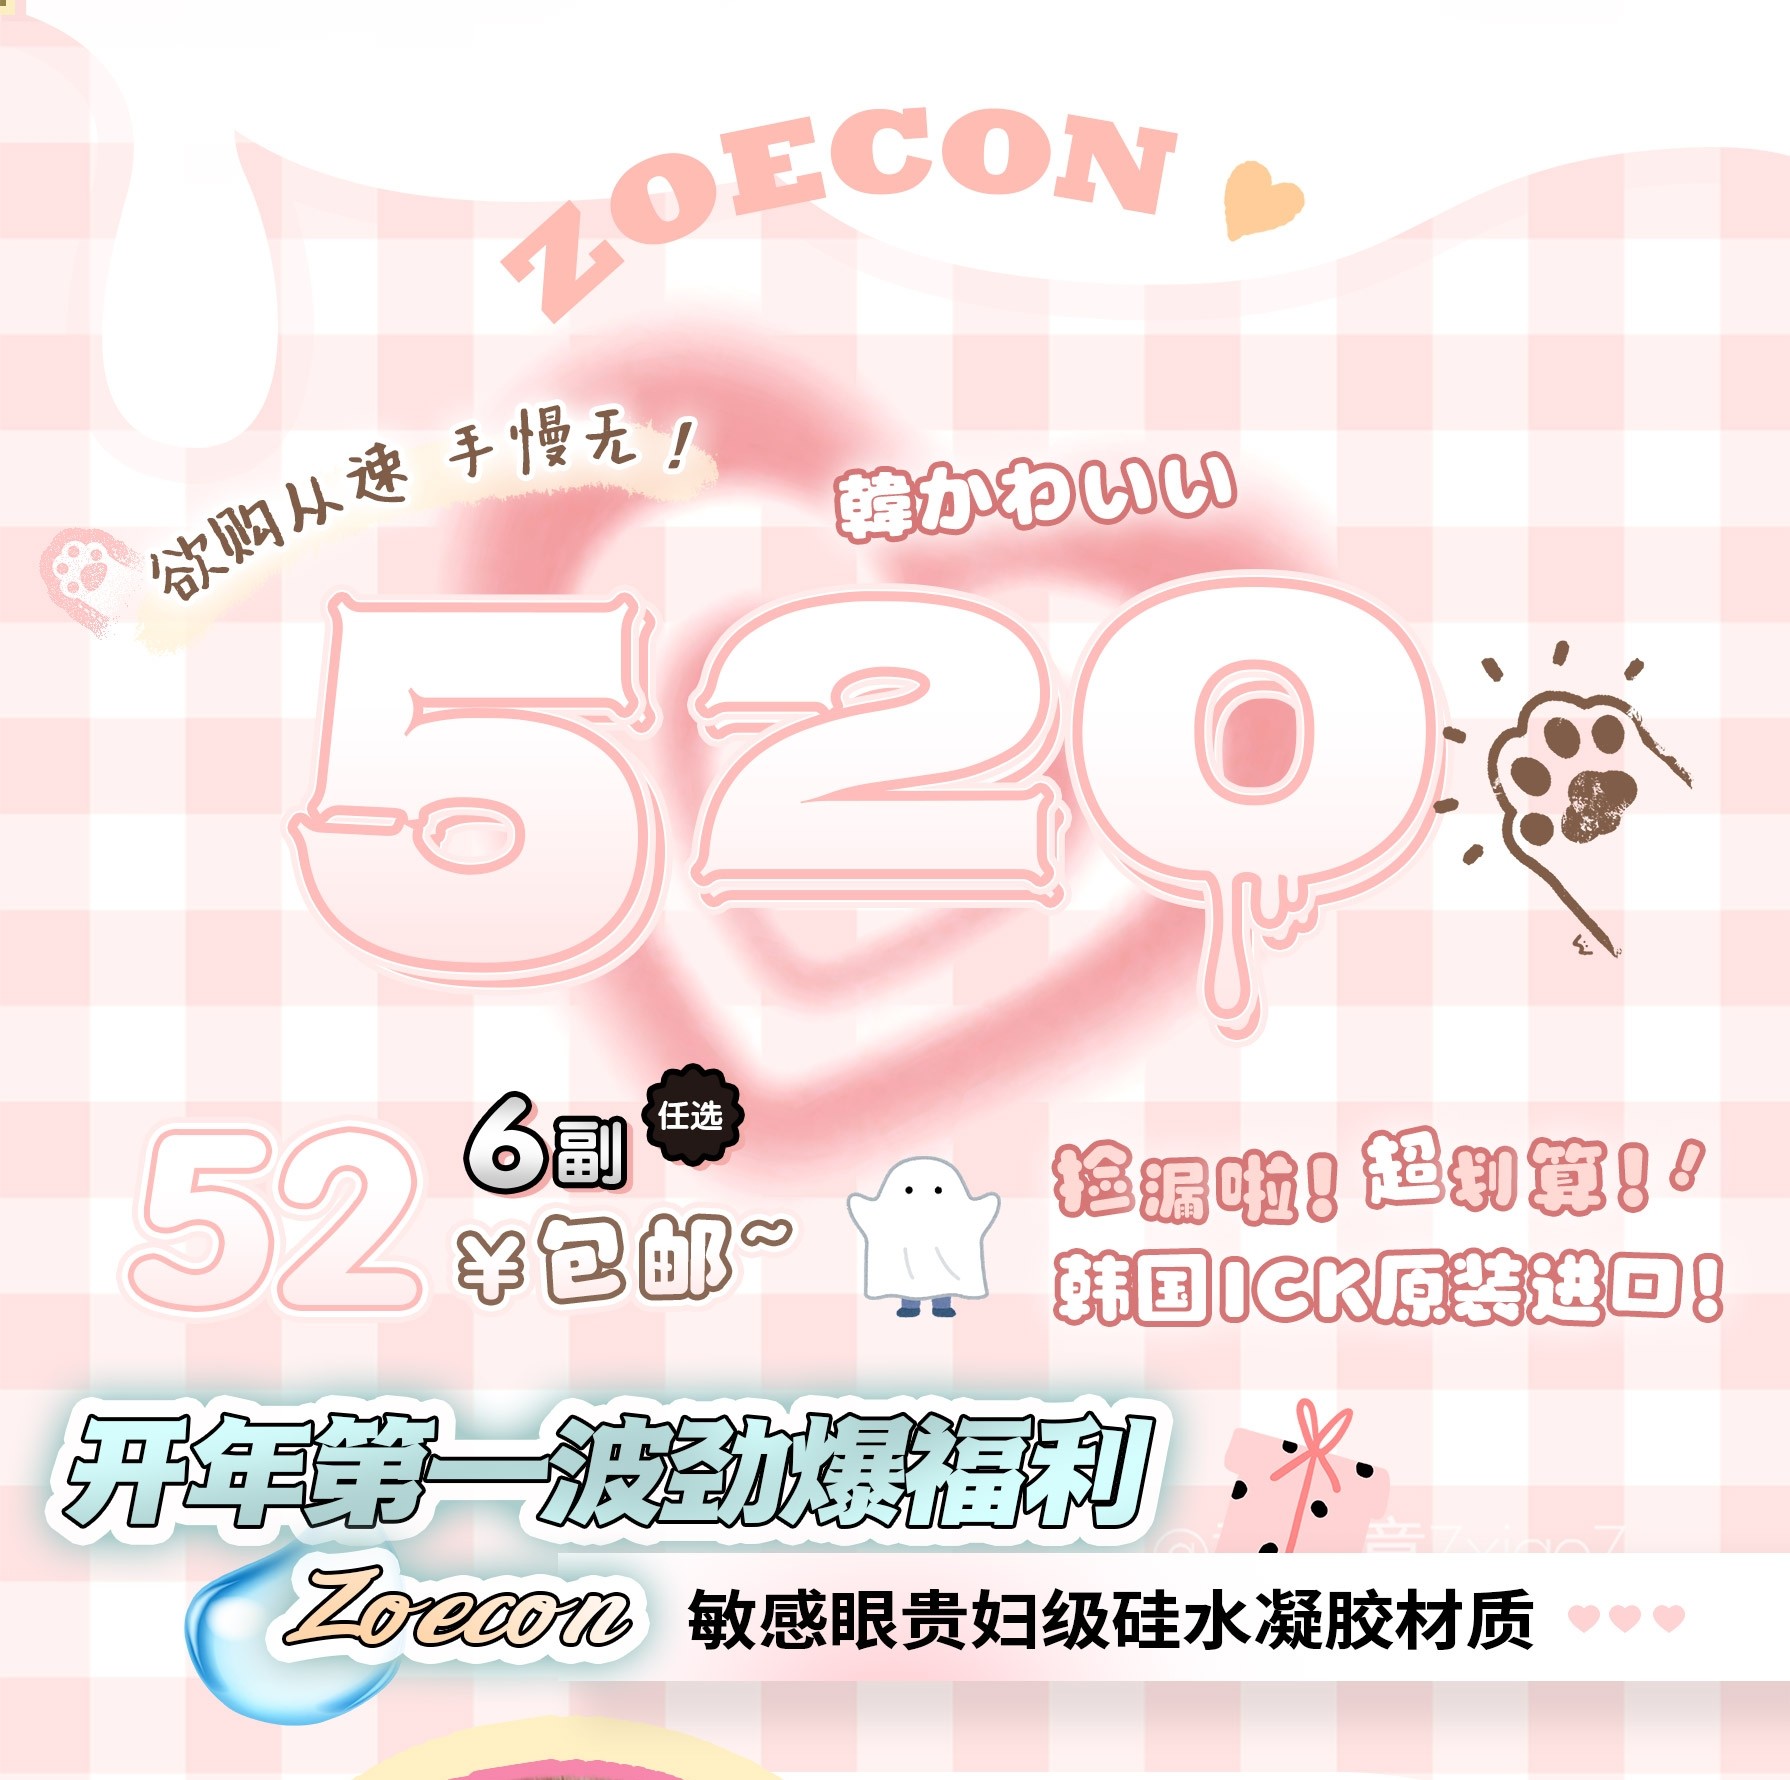 【秒杀】ZOECON 520浪漫约会 浪漫秒杀活动轻奢风小情调